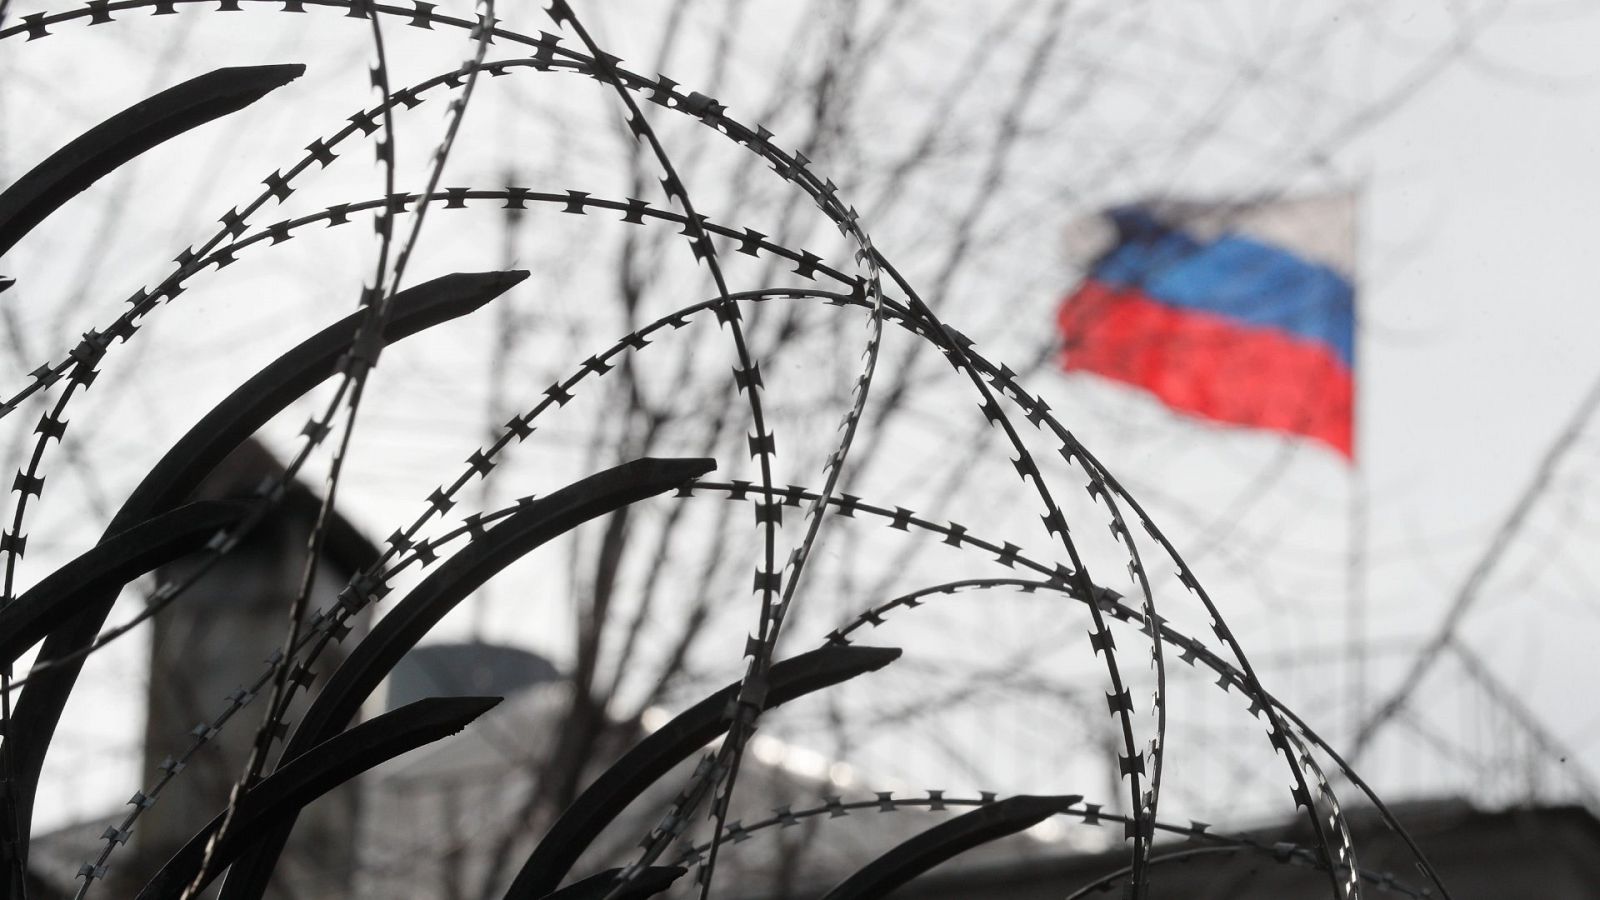 Putin envía tropas a Ucrania para "pacificar" Donetsk y Lugansk tras reconocer su independencia